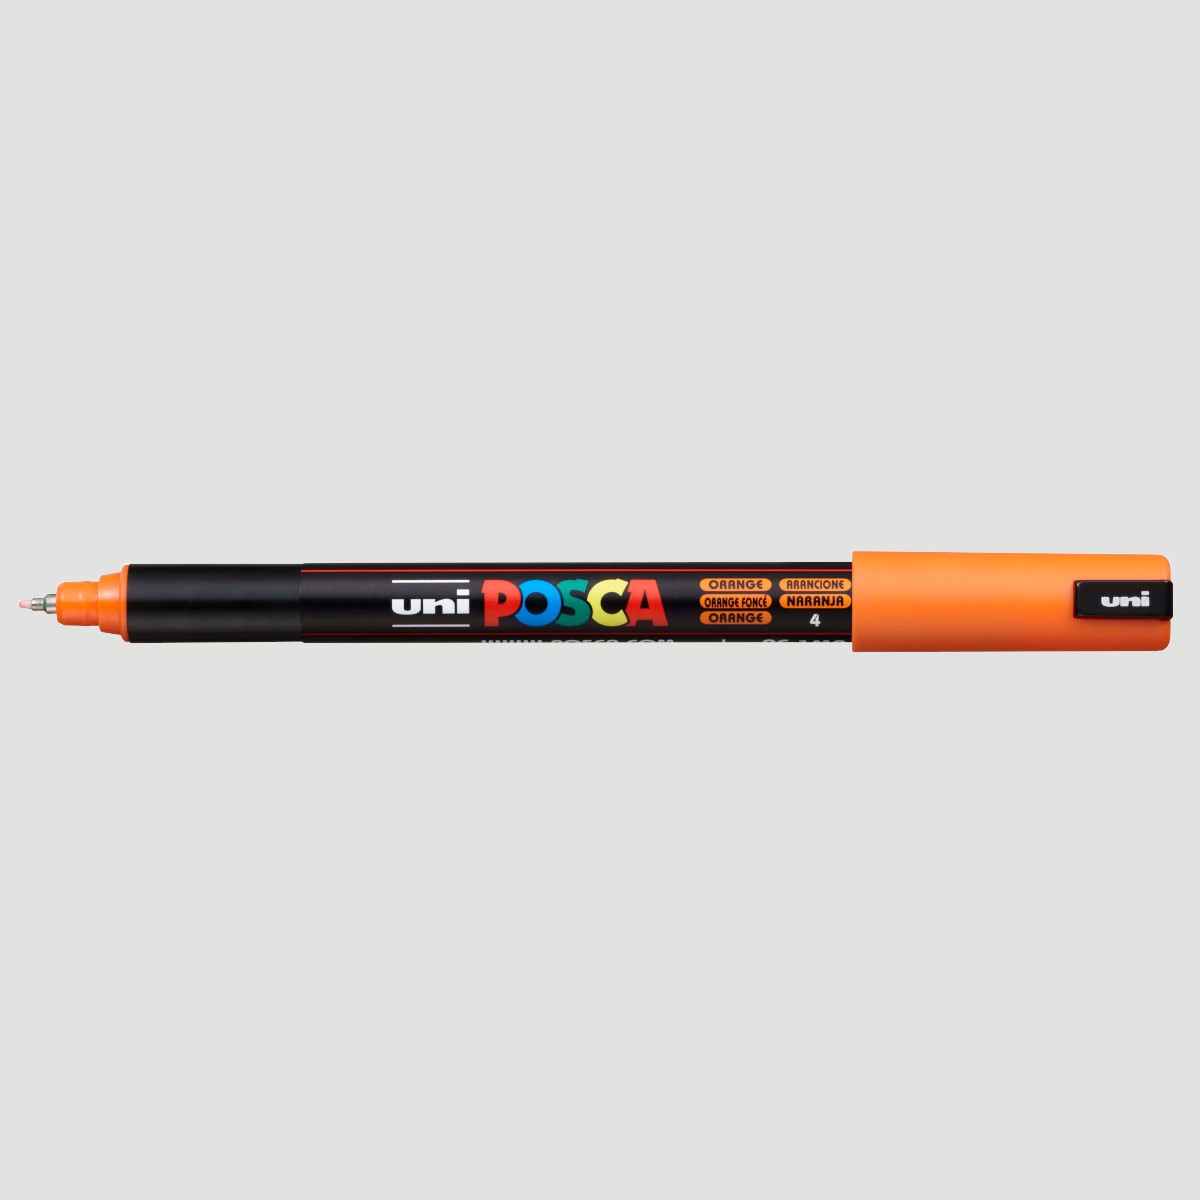 POSCA PC-1M Standard Colori Vernice pennarello 8 colori extra fine 0.7-1MM 